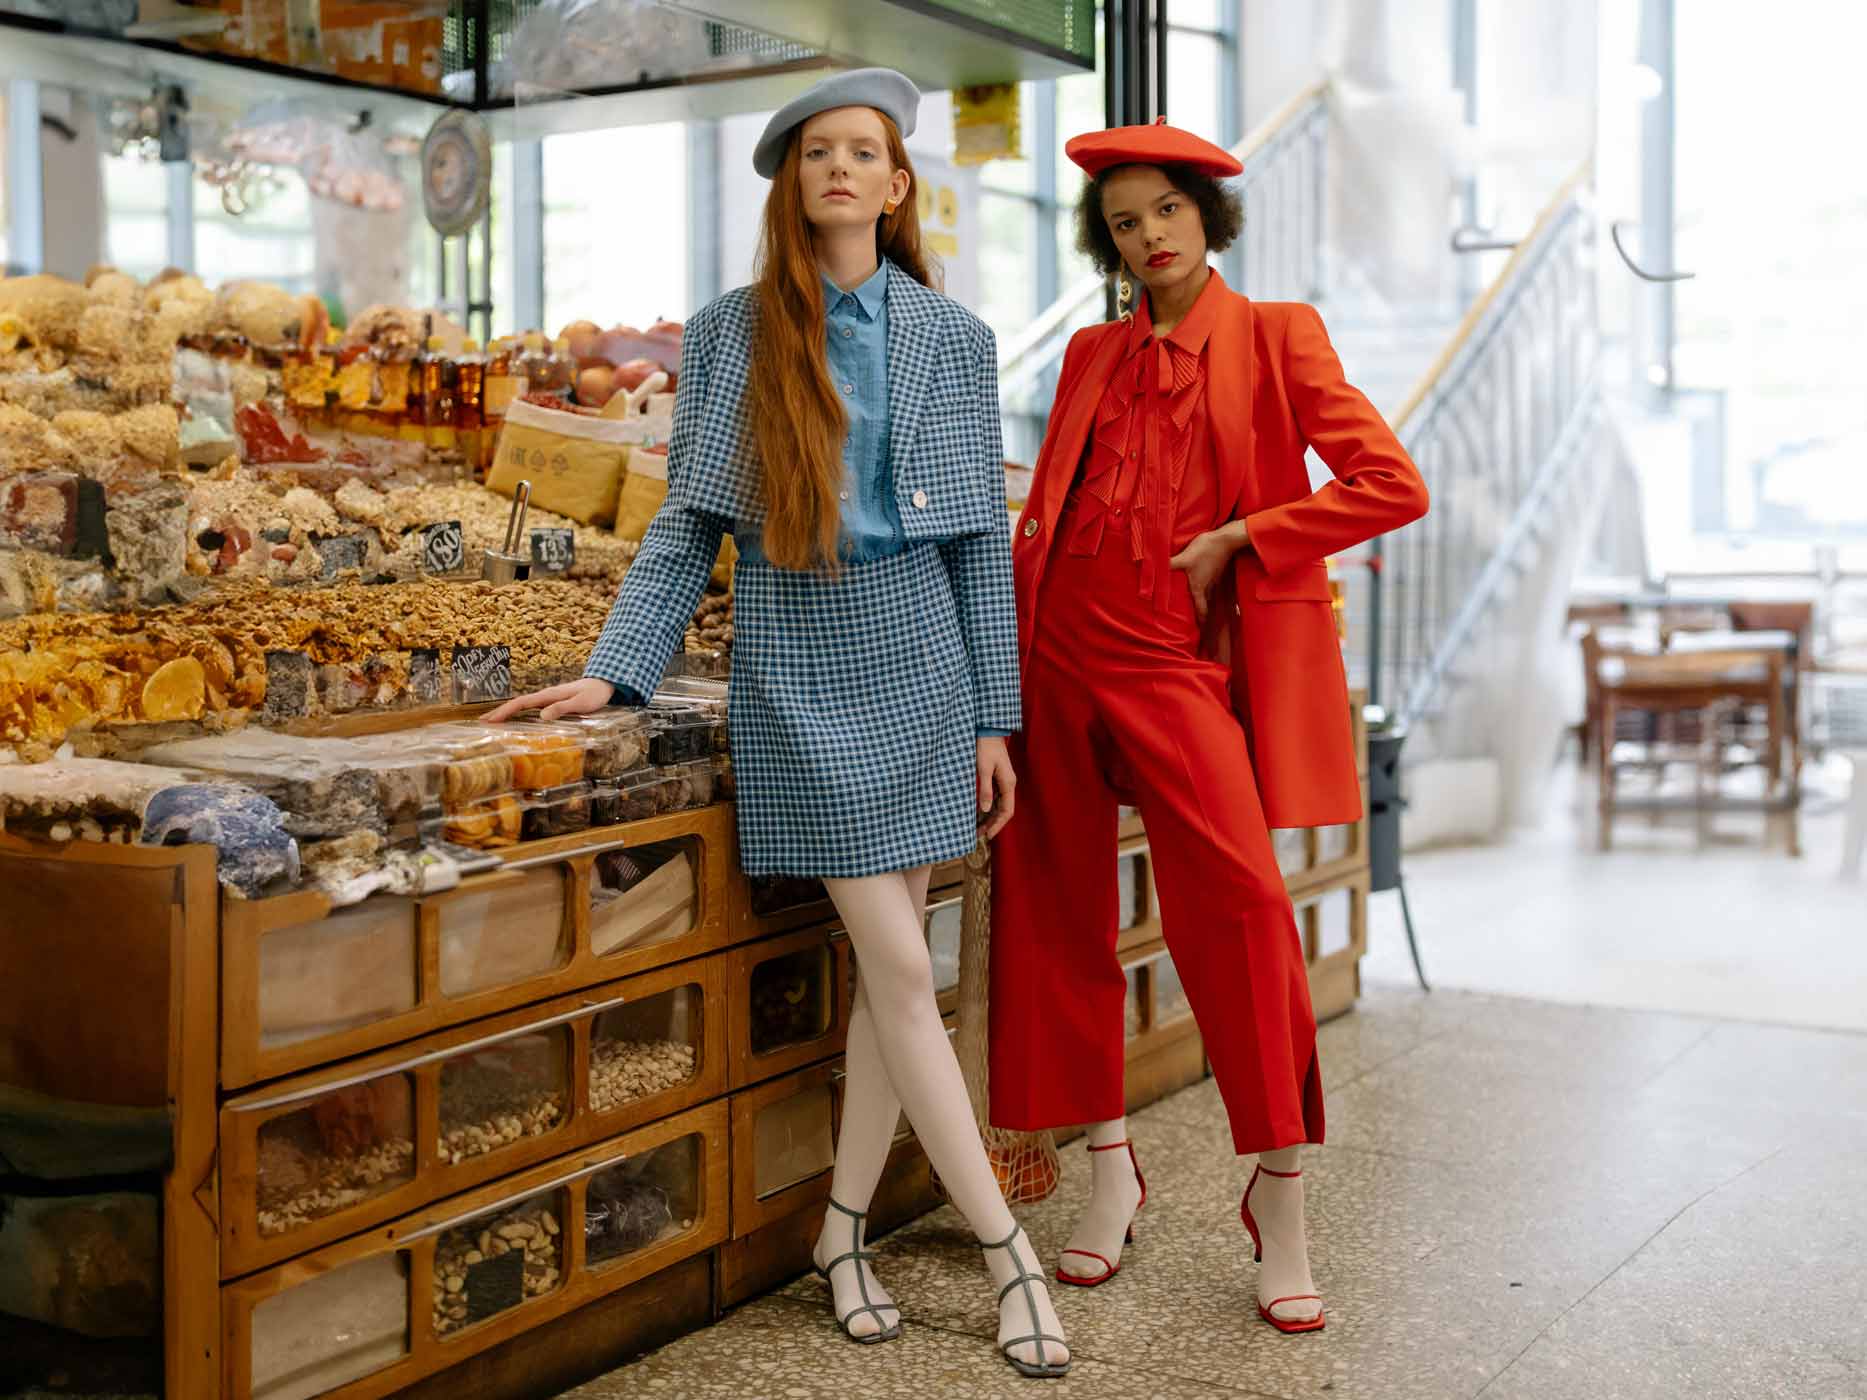 Zwei Frauen tragen monochrome Outfits, eine ganz in Rot und die andere in Blau